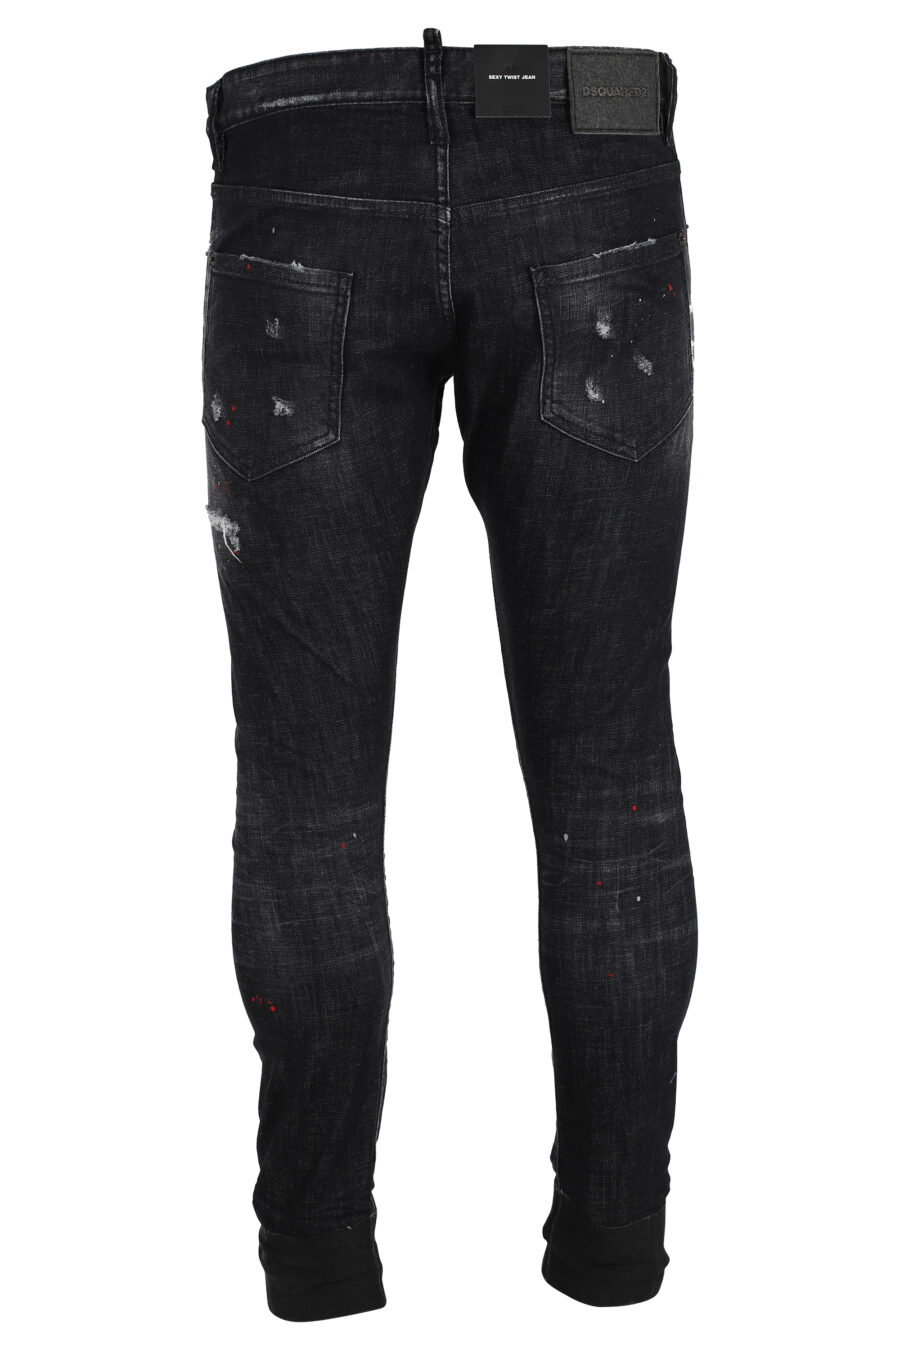 Sexy twist denim jeans, black frayed - IMG 4857